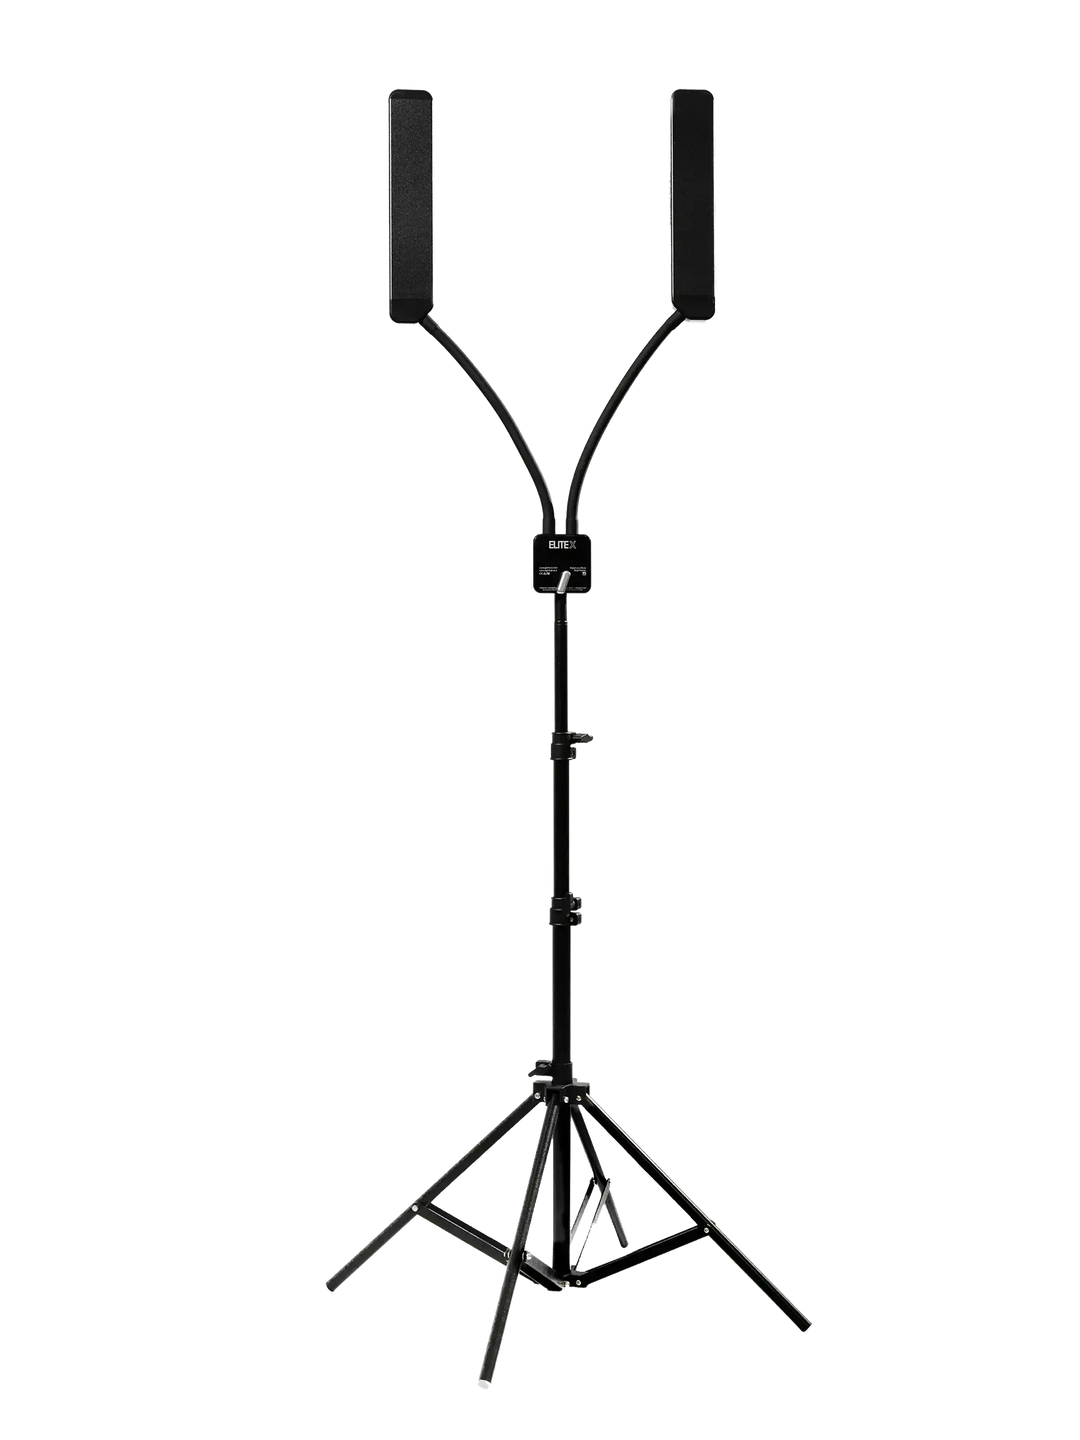 ЭЛИТ Х МАСТЕР | Персонализированная светодиодная лампа с двумя гибкими кронштейнами.